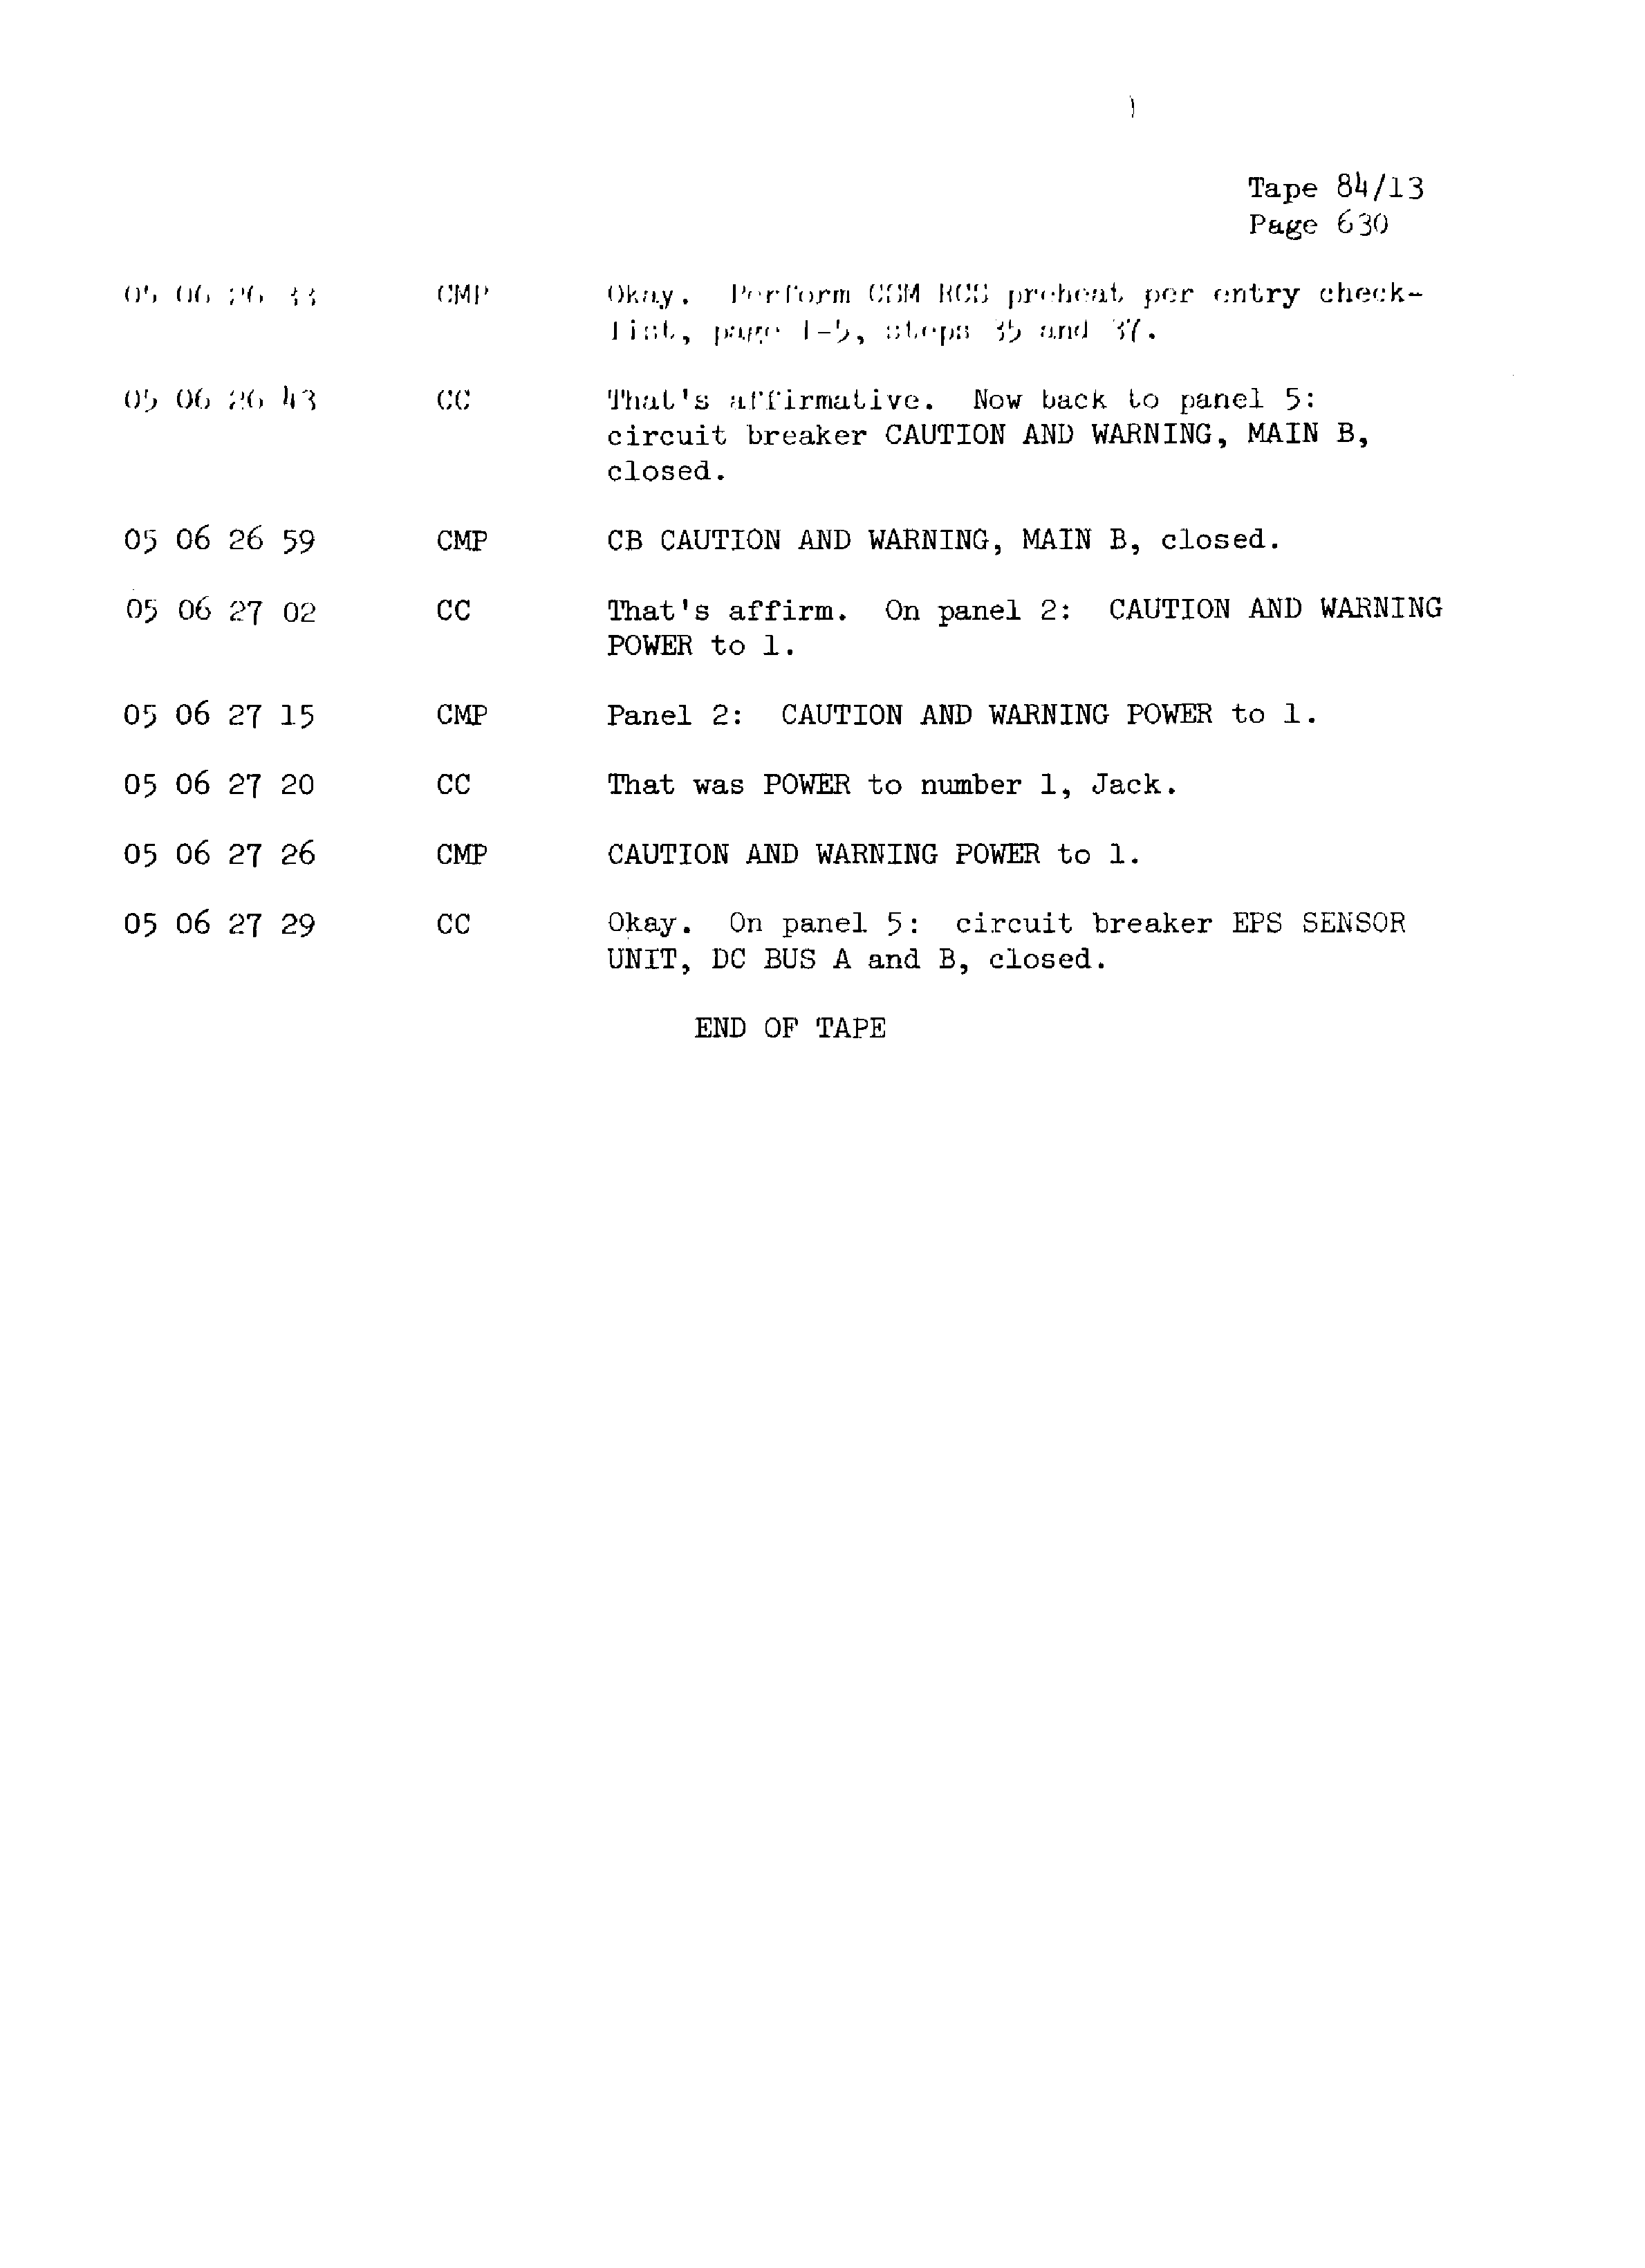 Page 637 of Apollo 13’s original transcript